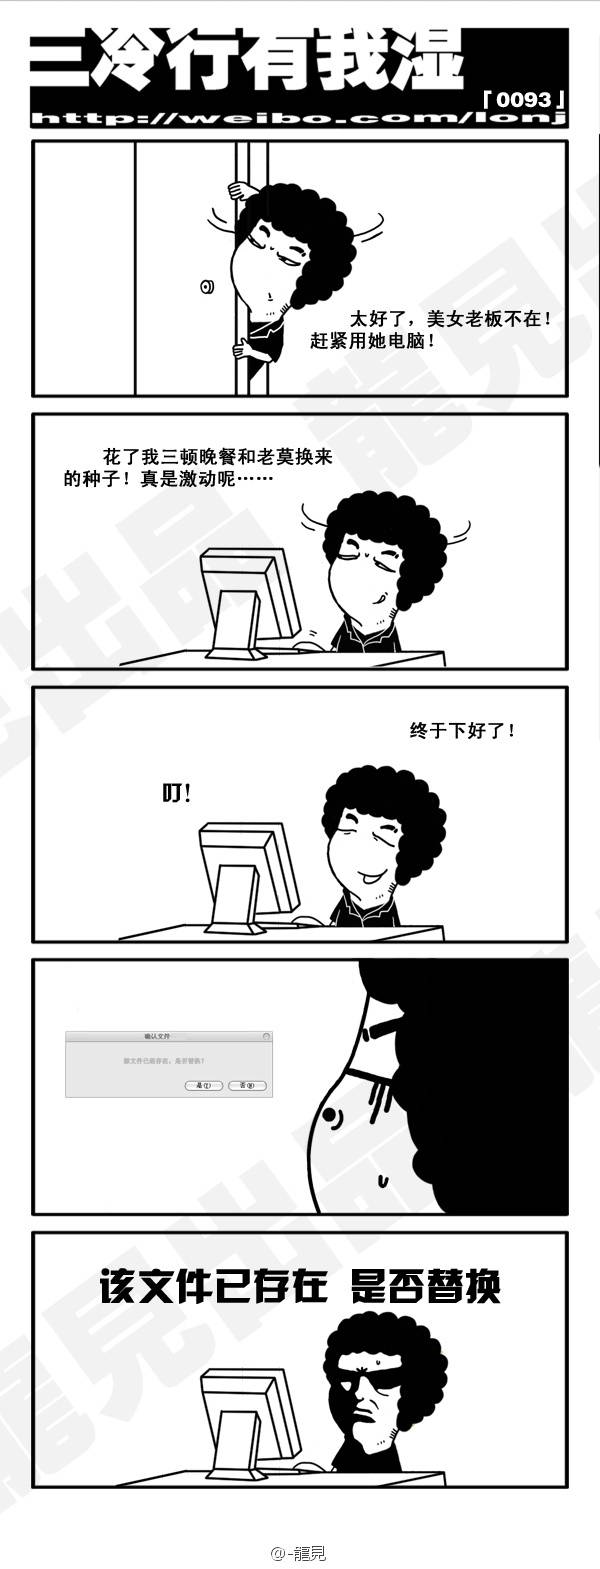 邪恶漫画爆笑囧图第62刊：狂暴